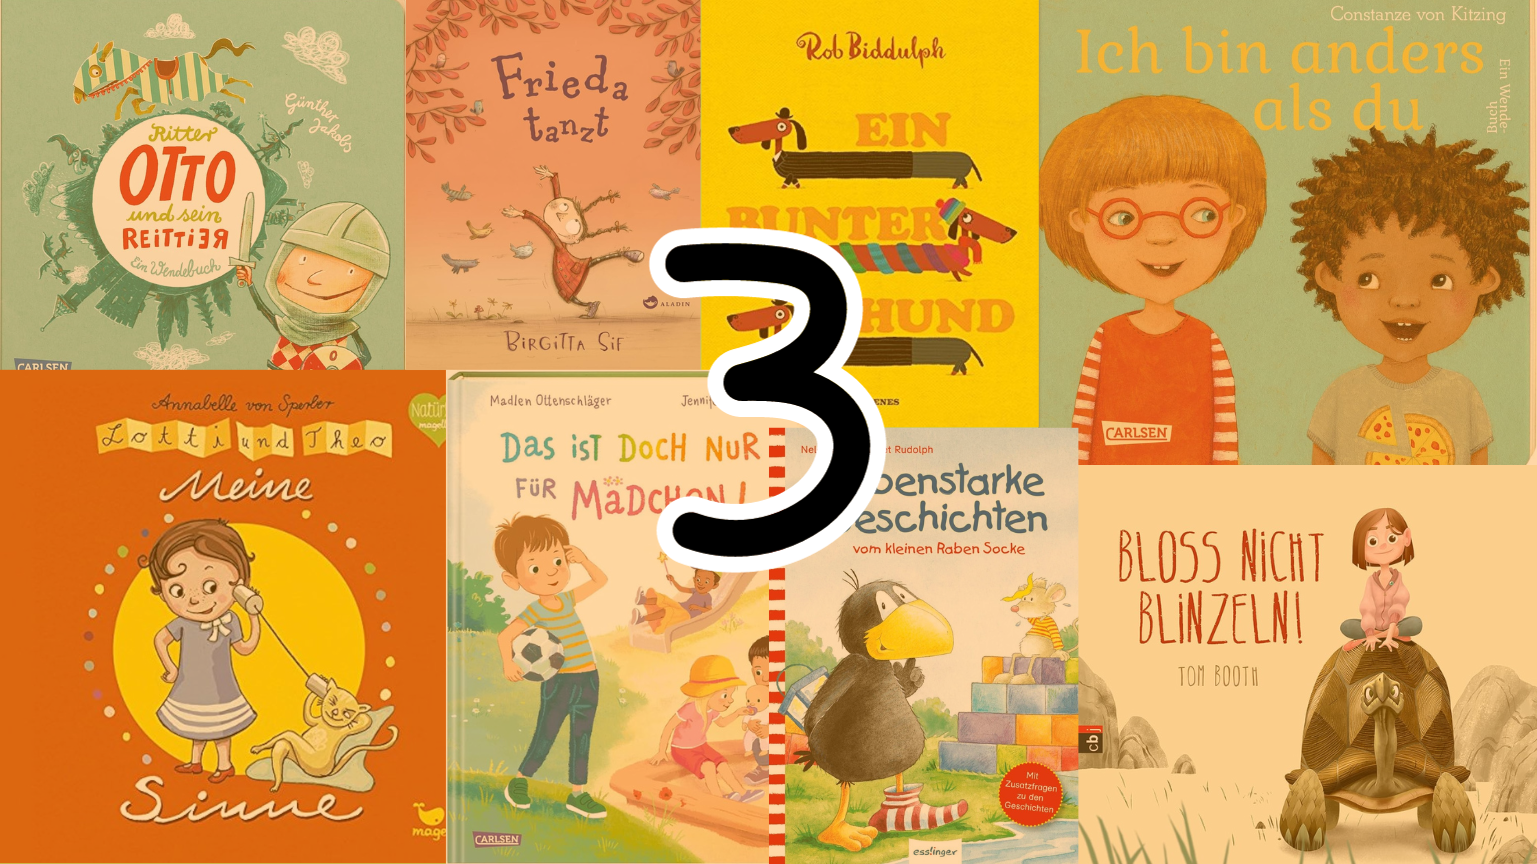 Cover für den Blogpost "Kinderbücher ab 3 Jahren" mit den Buchcovern und einem großen 3er in der Mitte